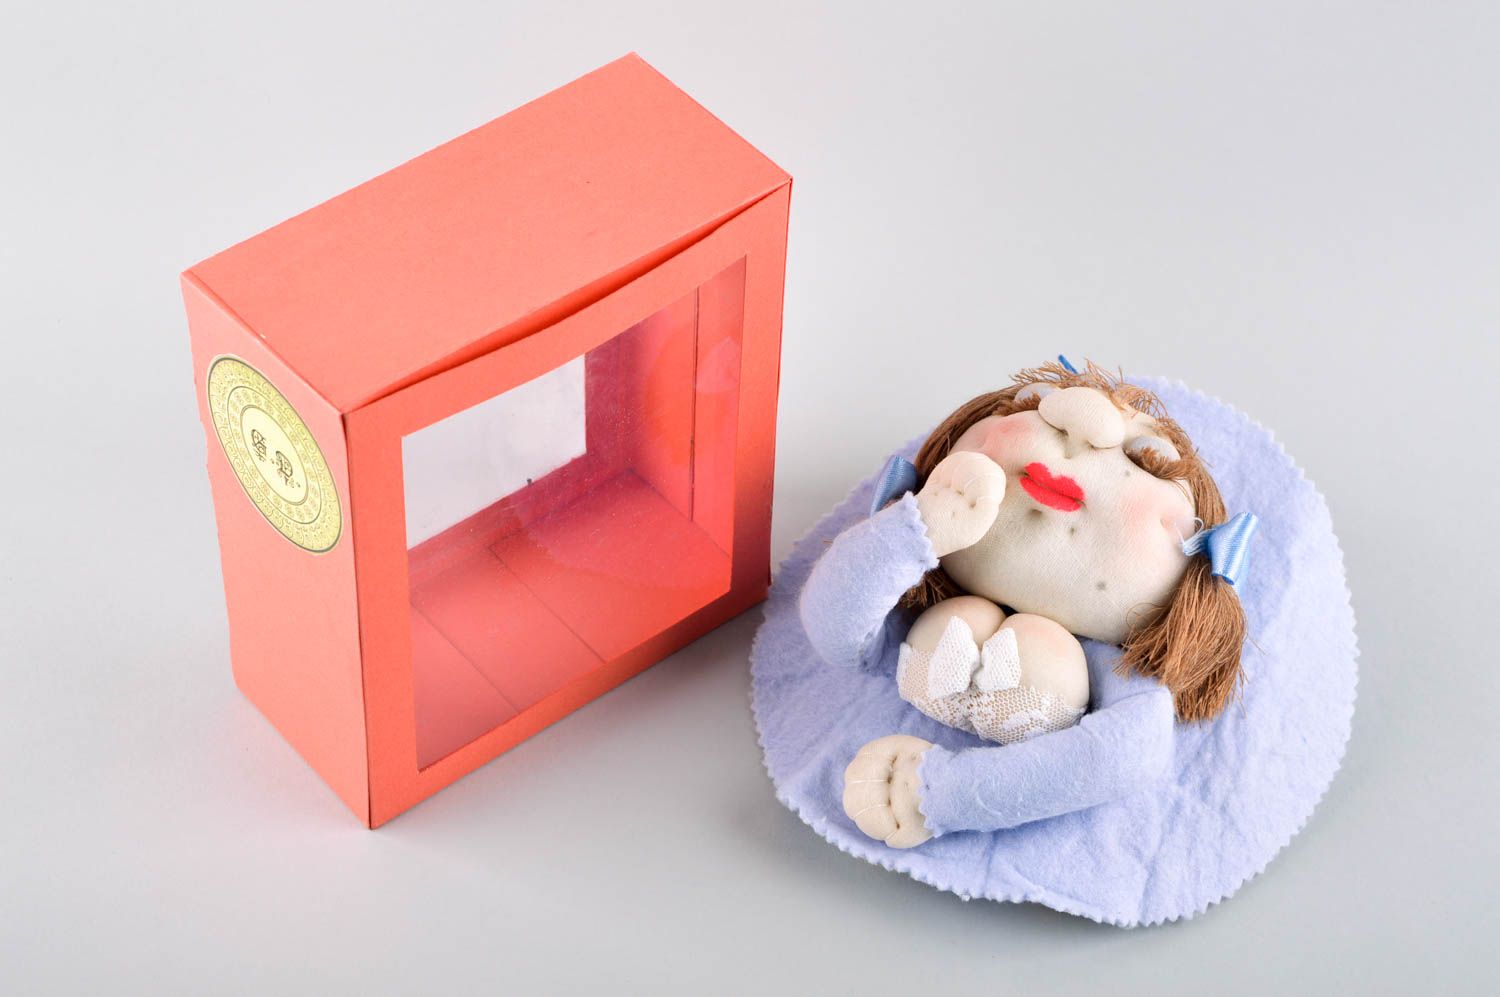 Puppe handgemacht Stoff Puppe Kinder Spielzeug Geschenk Idee originell nett foto 4